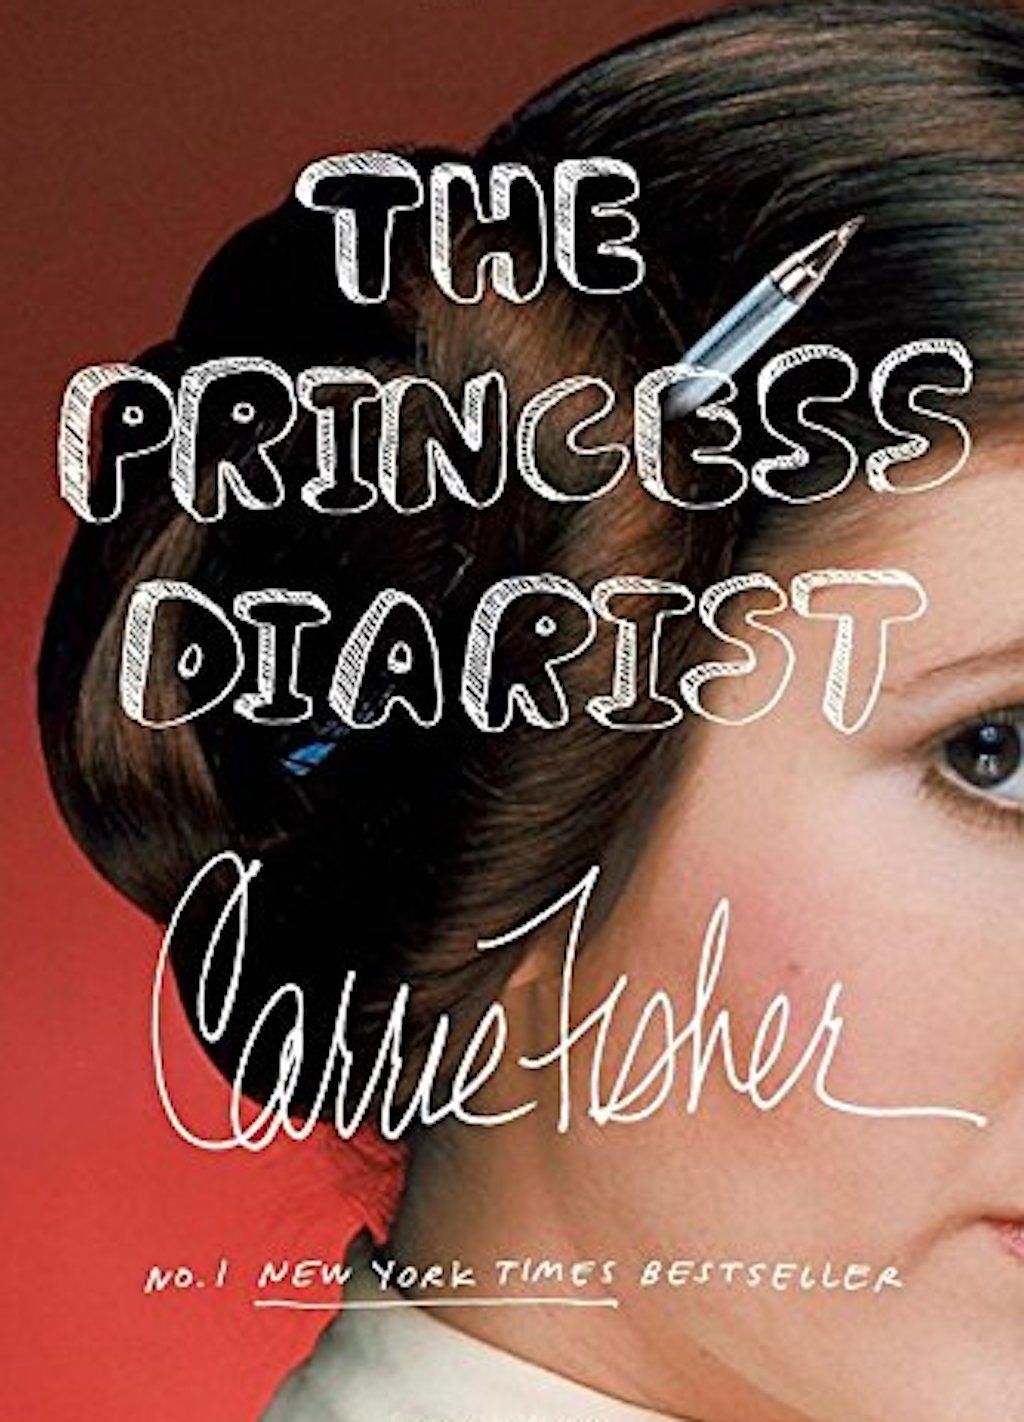 Llibres de celebritats més divertits de Carrie Fisher